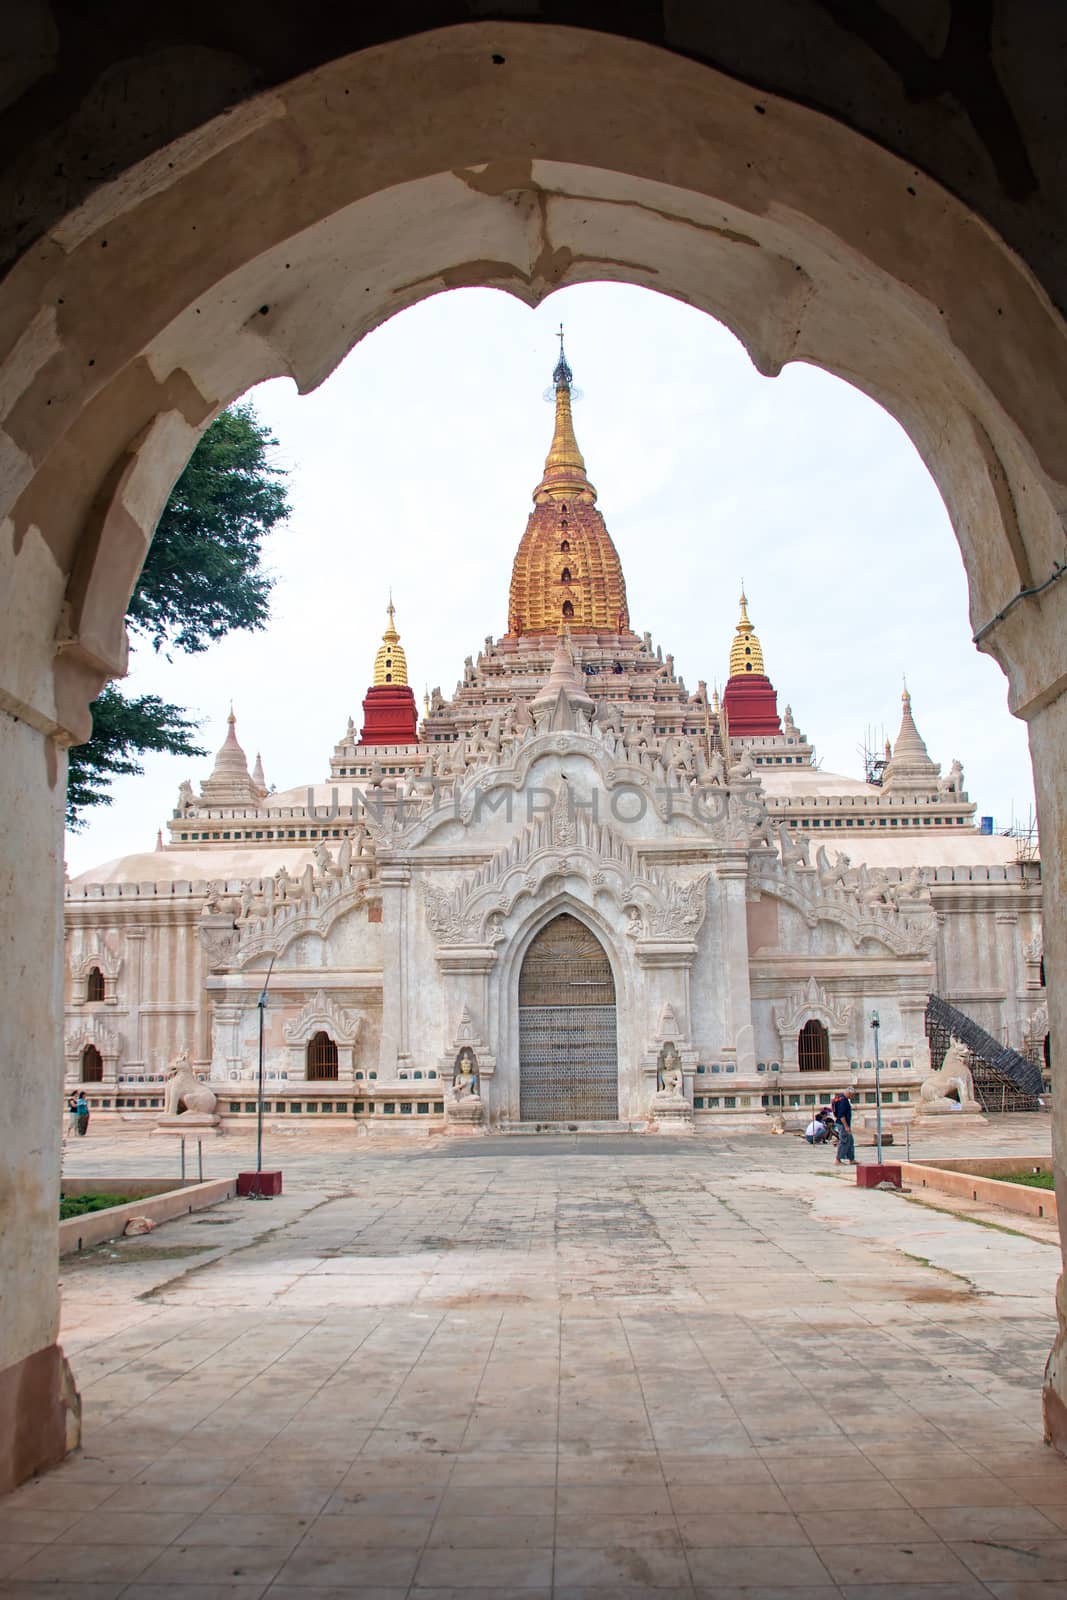  Ananda temple in Bagan , Myanmar by devy